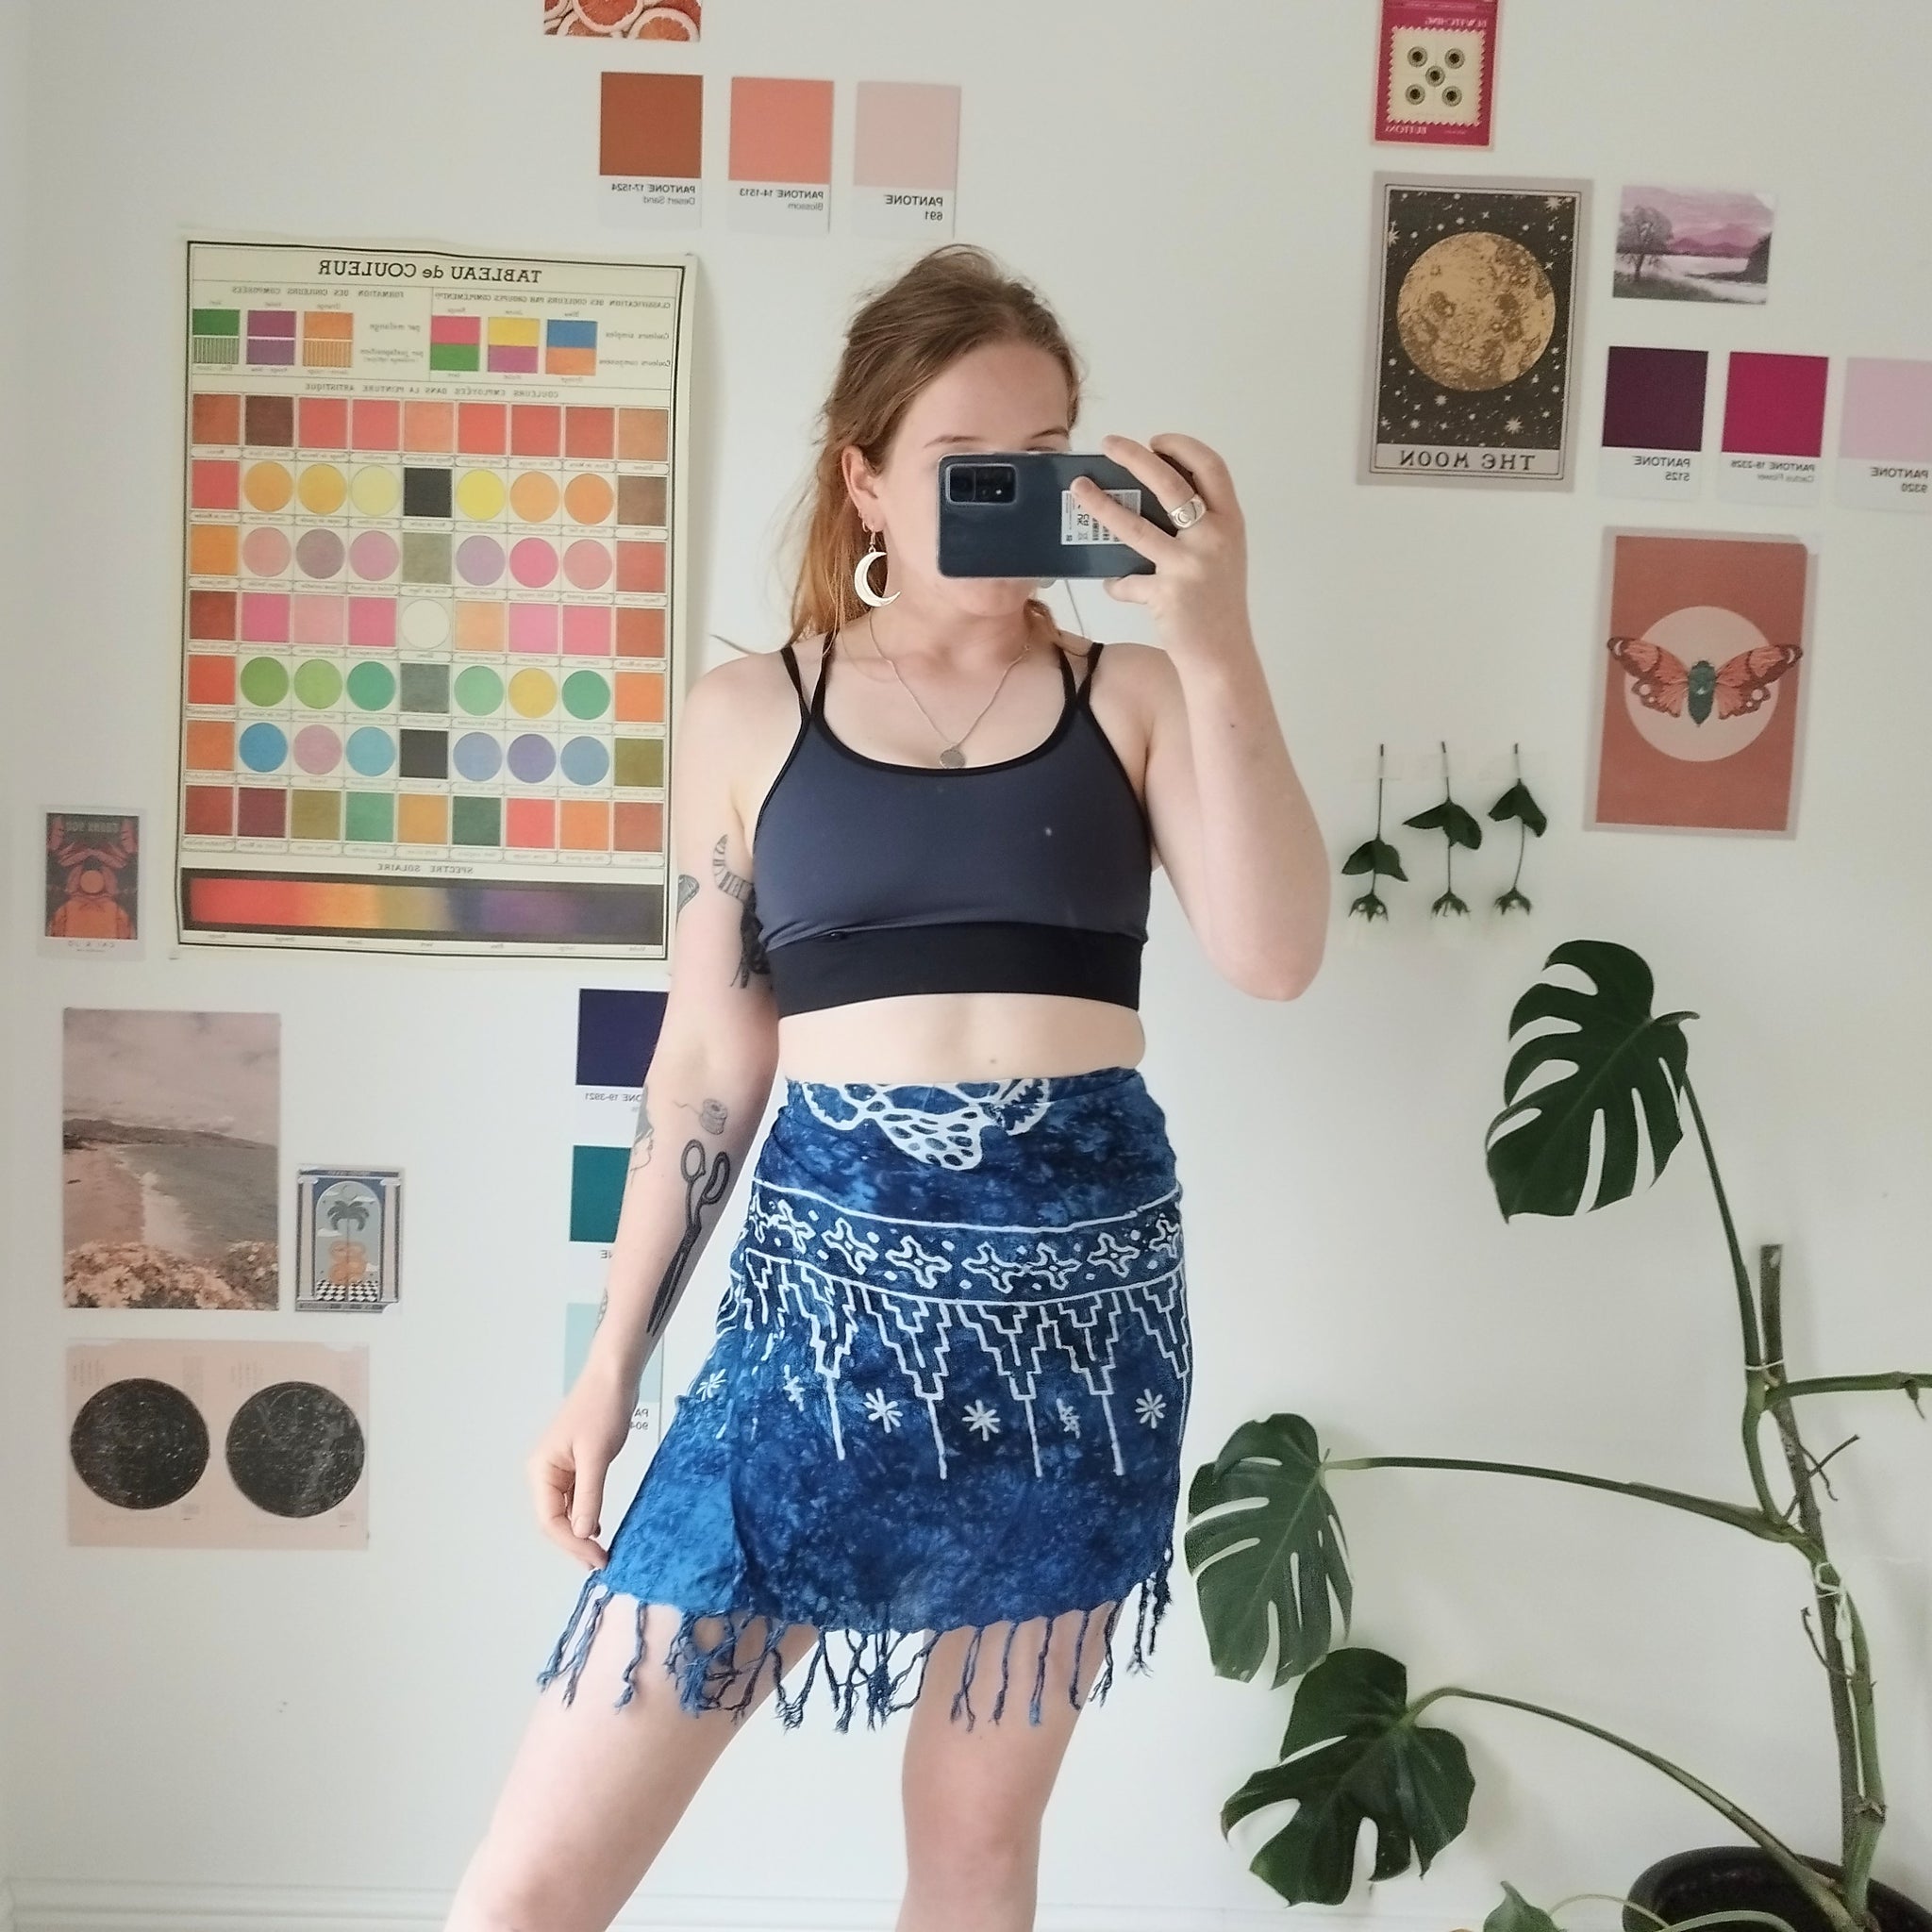 Ocean wrap skirt (S)